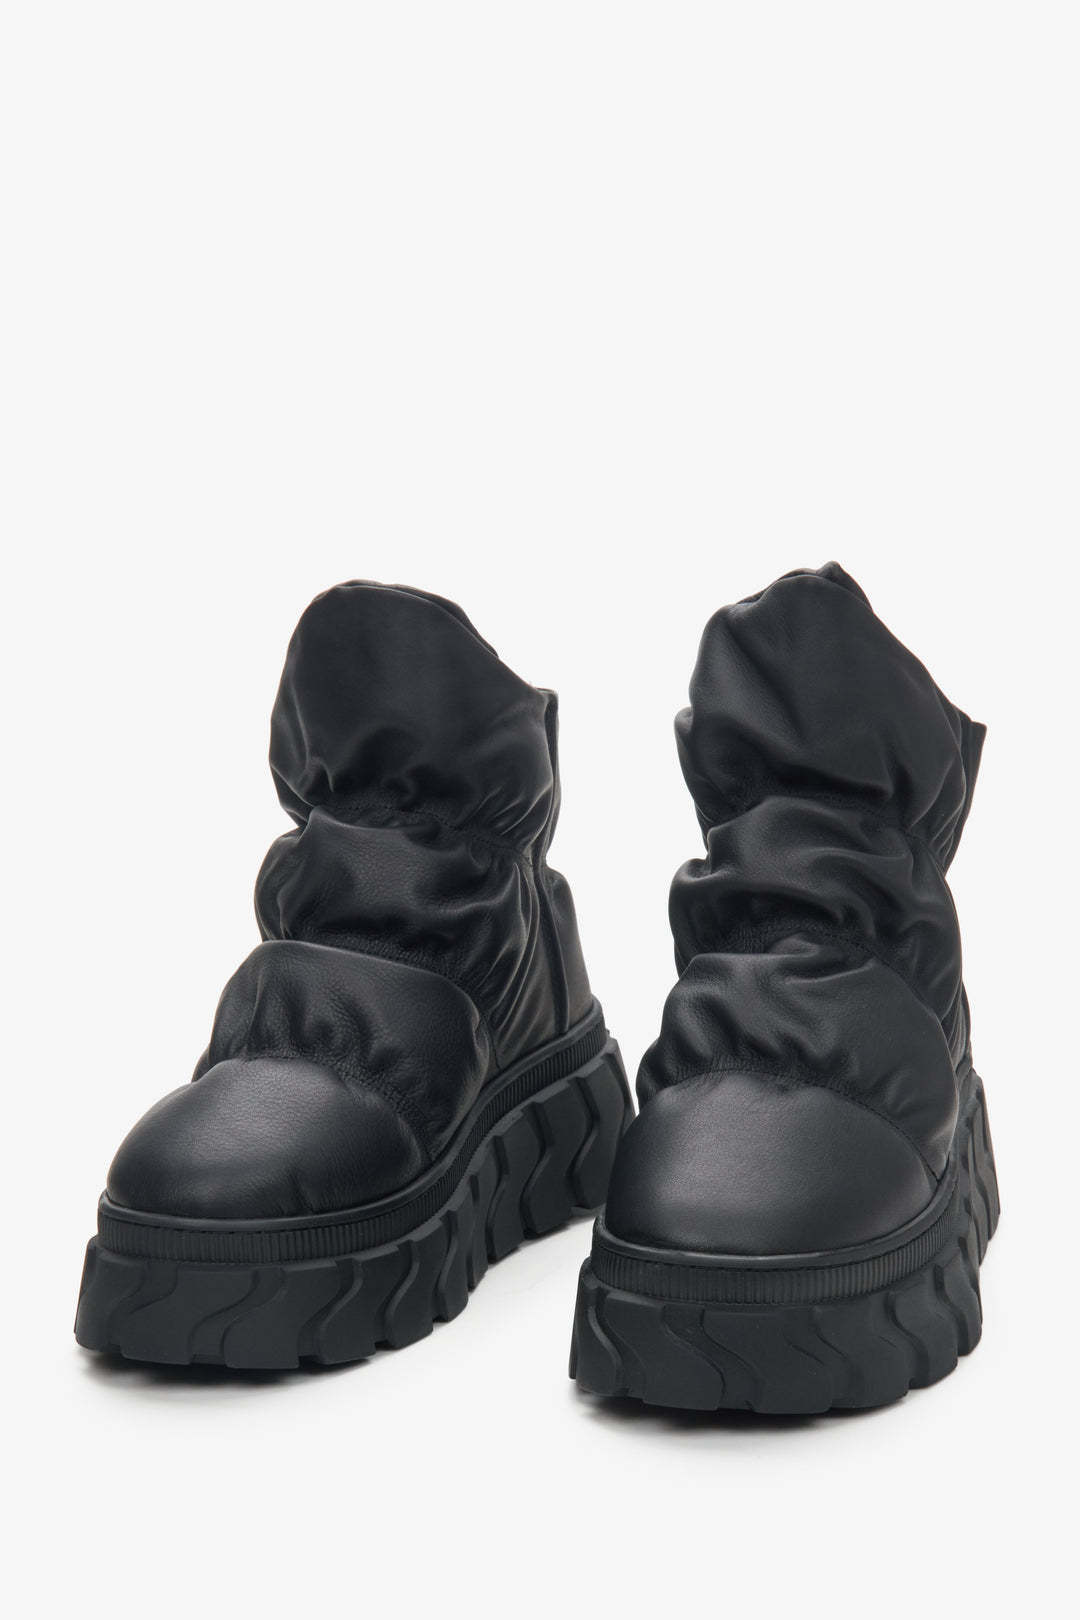 Skórzane śniegowce damskie czarne z puchowym wsadem Estro - zbliżenie na czubek buta.